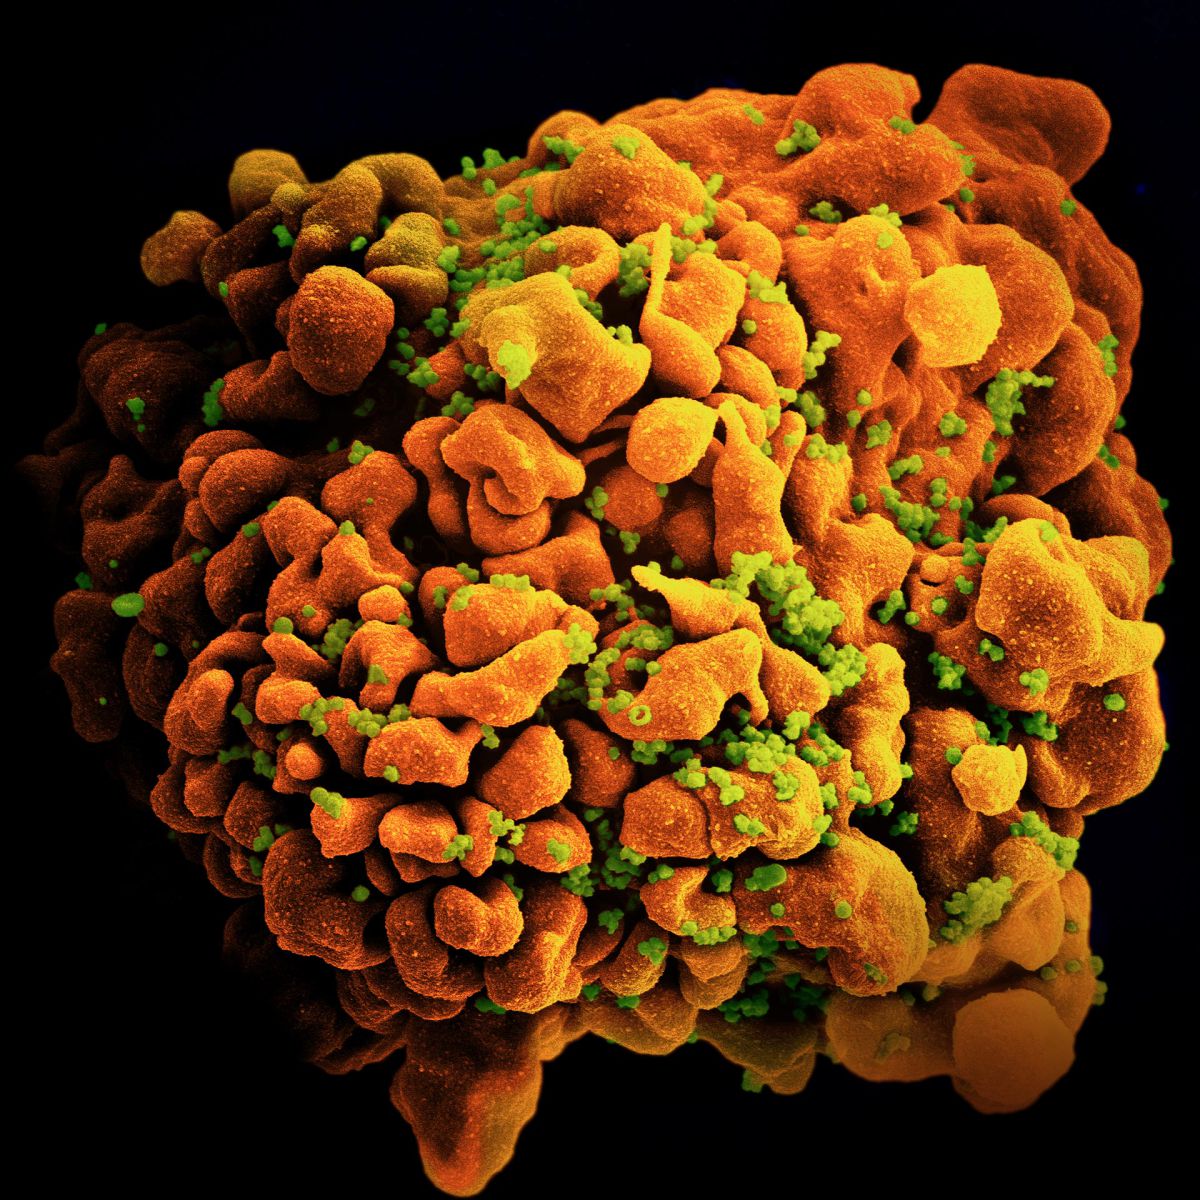 Yeni HIV Varyantı Keşfedildi